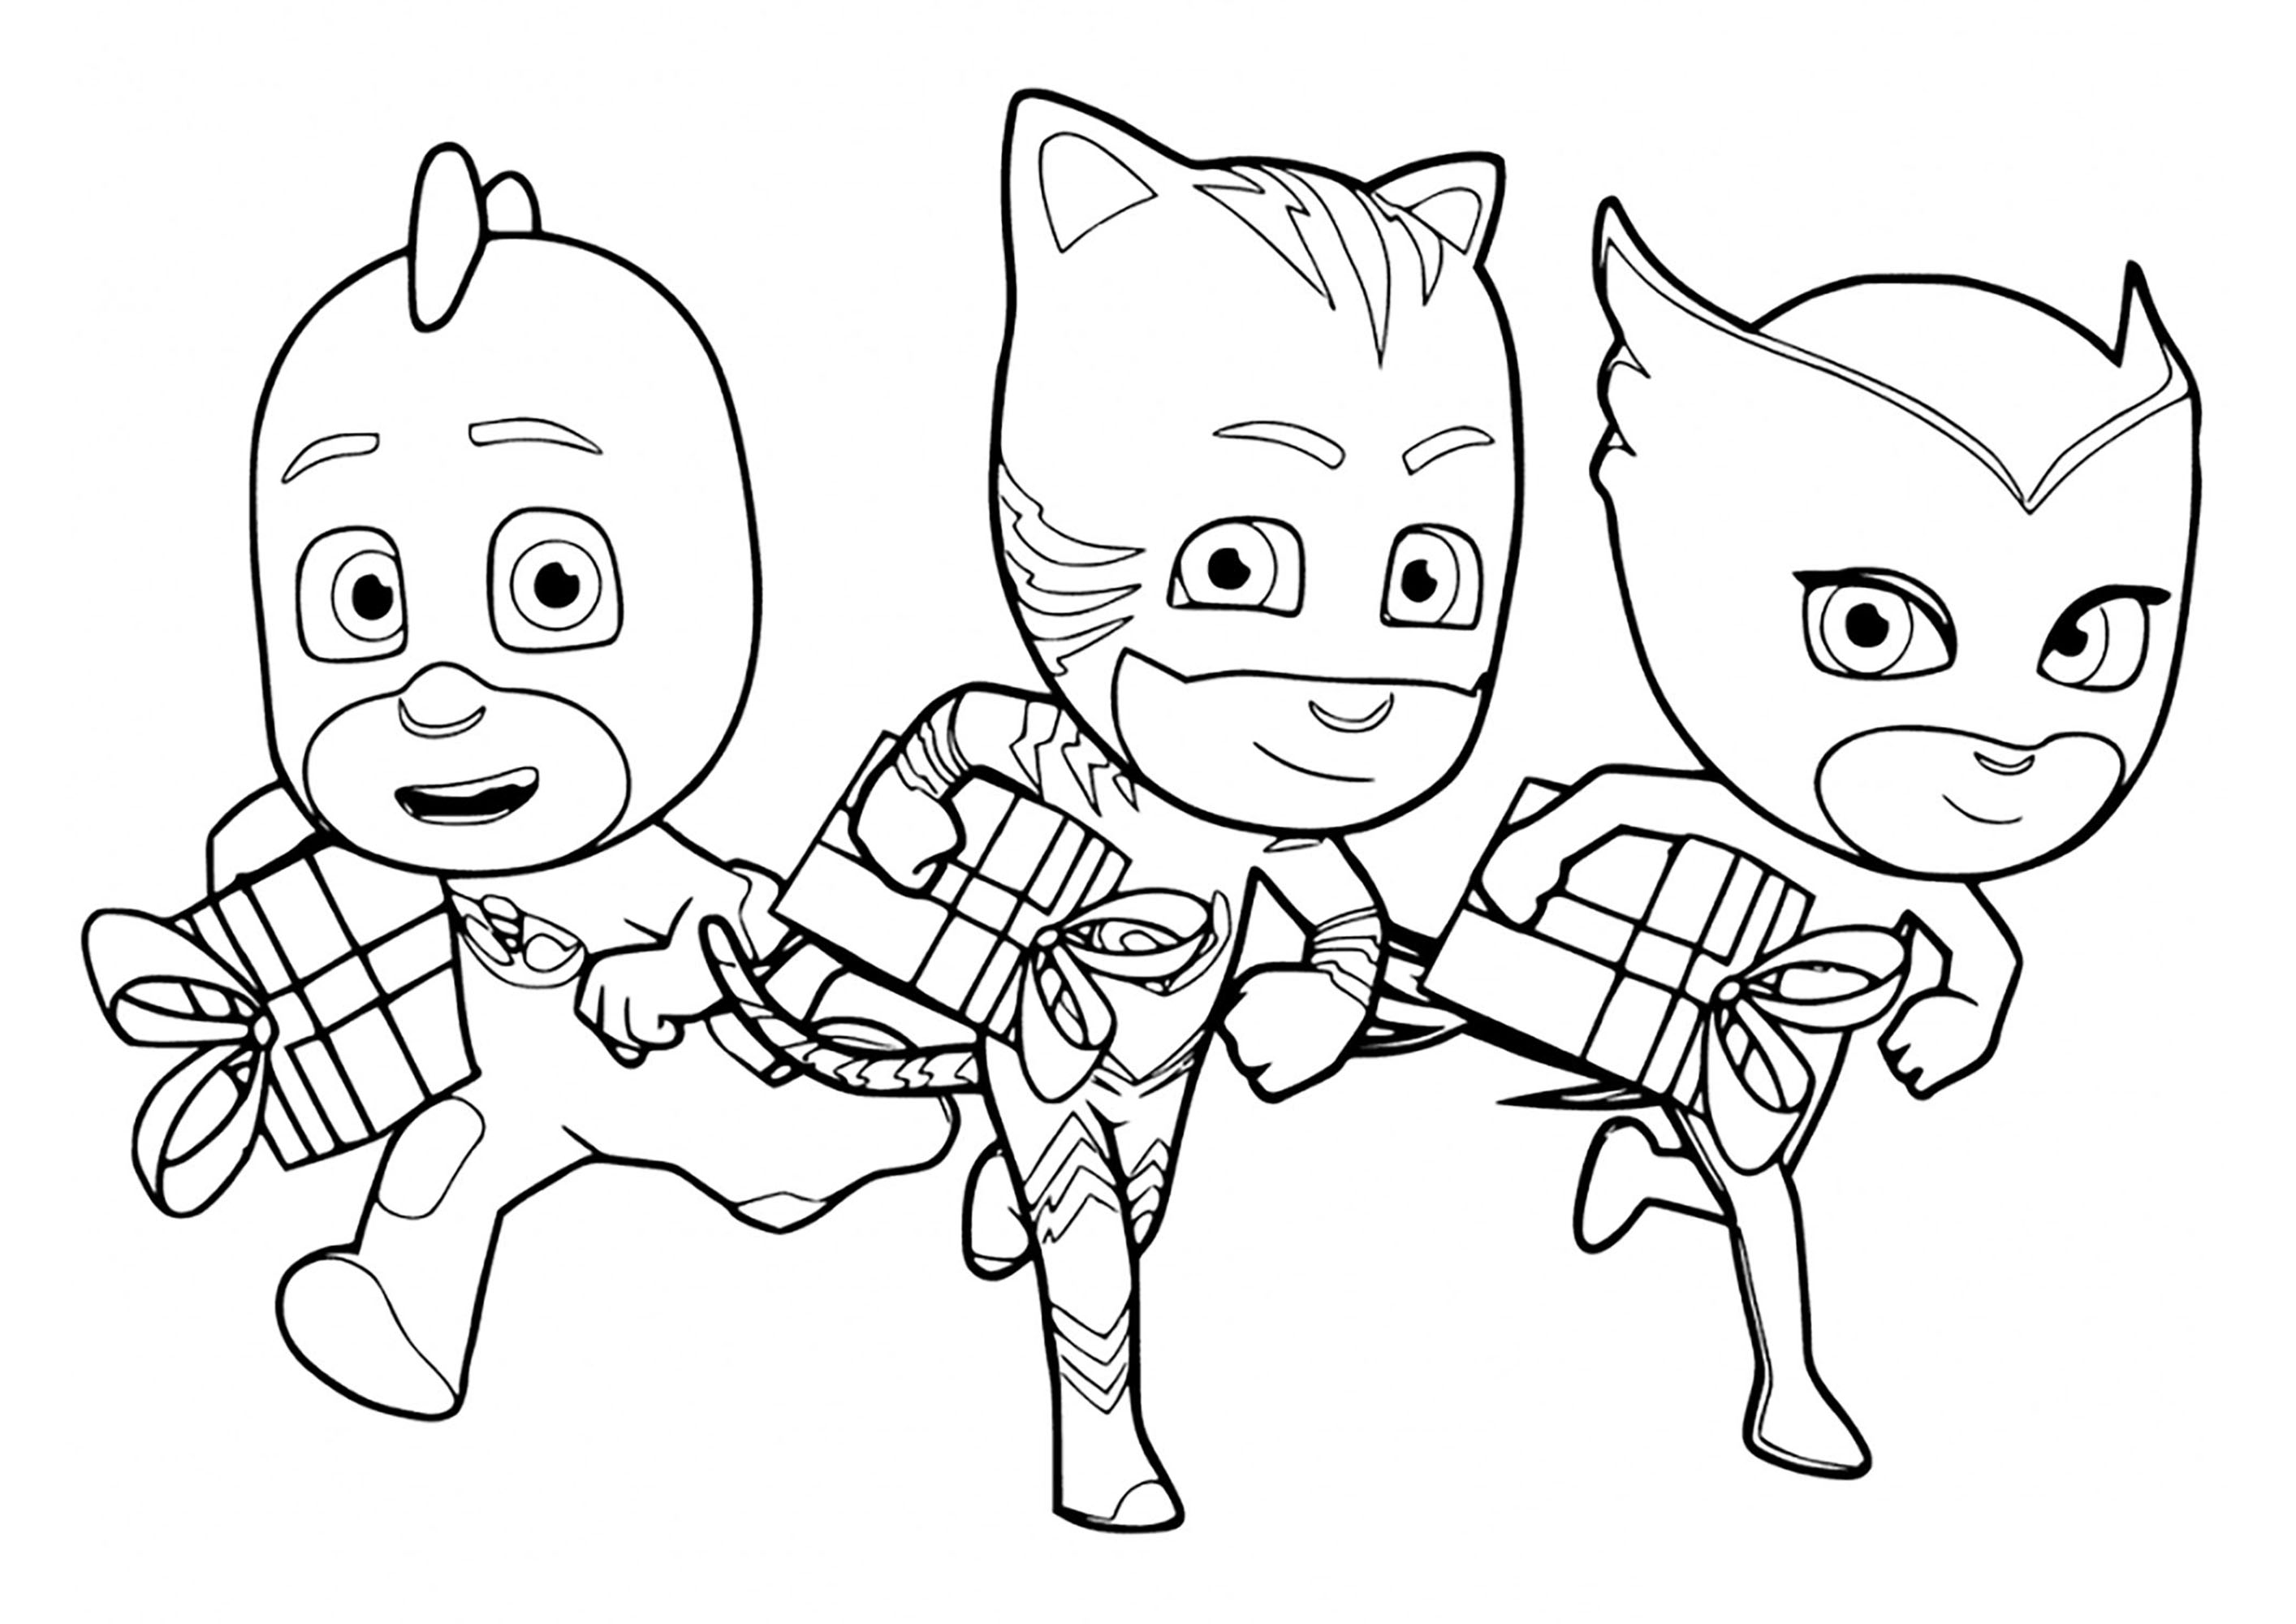 Superheroes of PJ Masks - PJ Masks Kids Coloring Pages